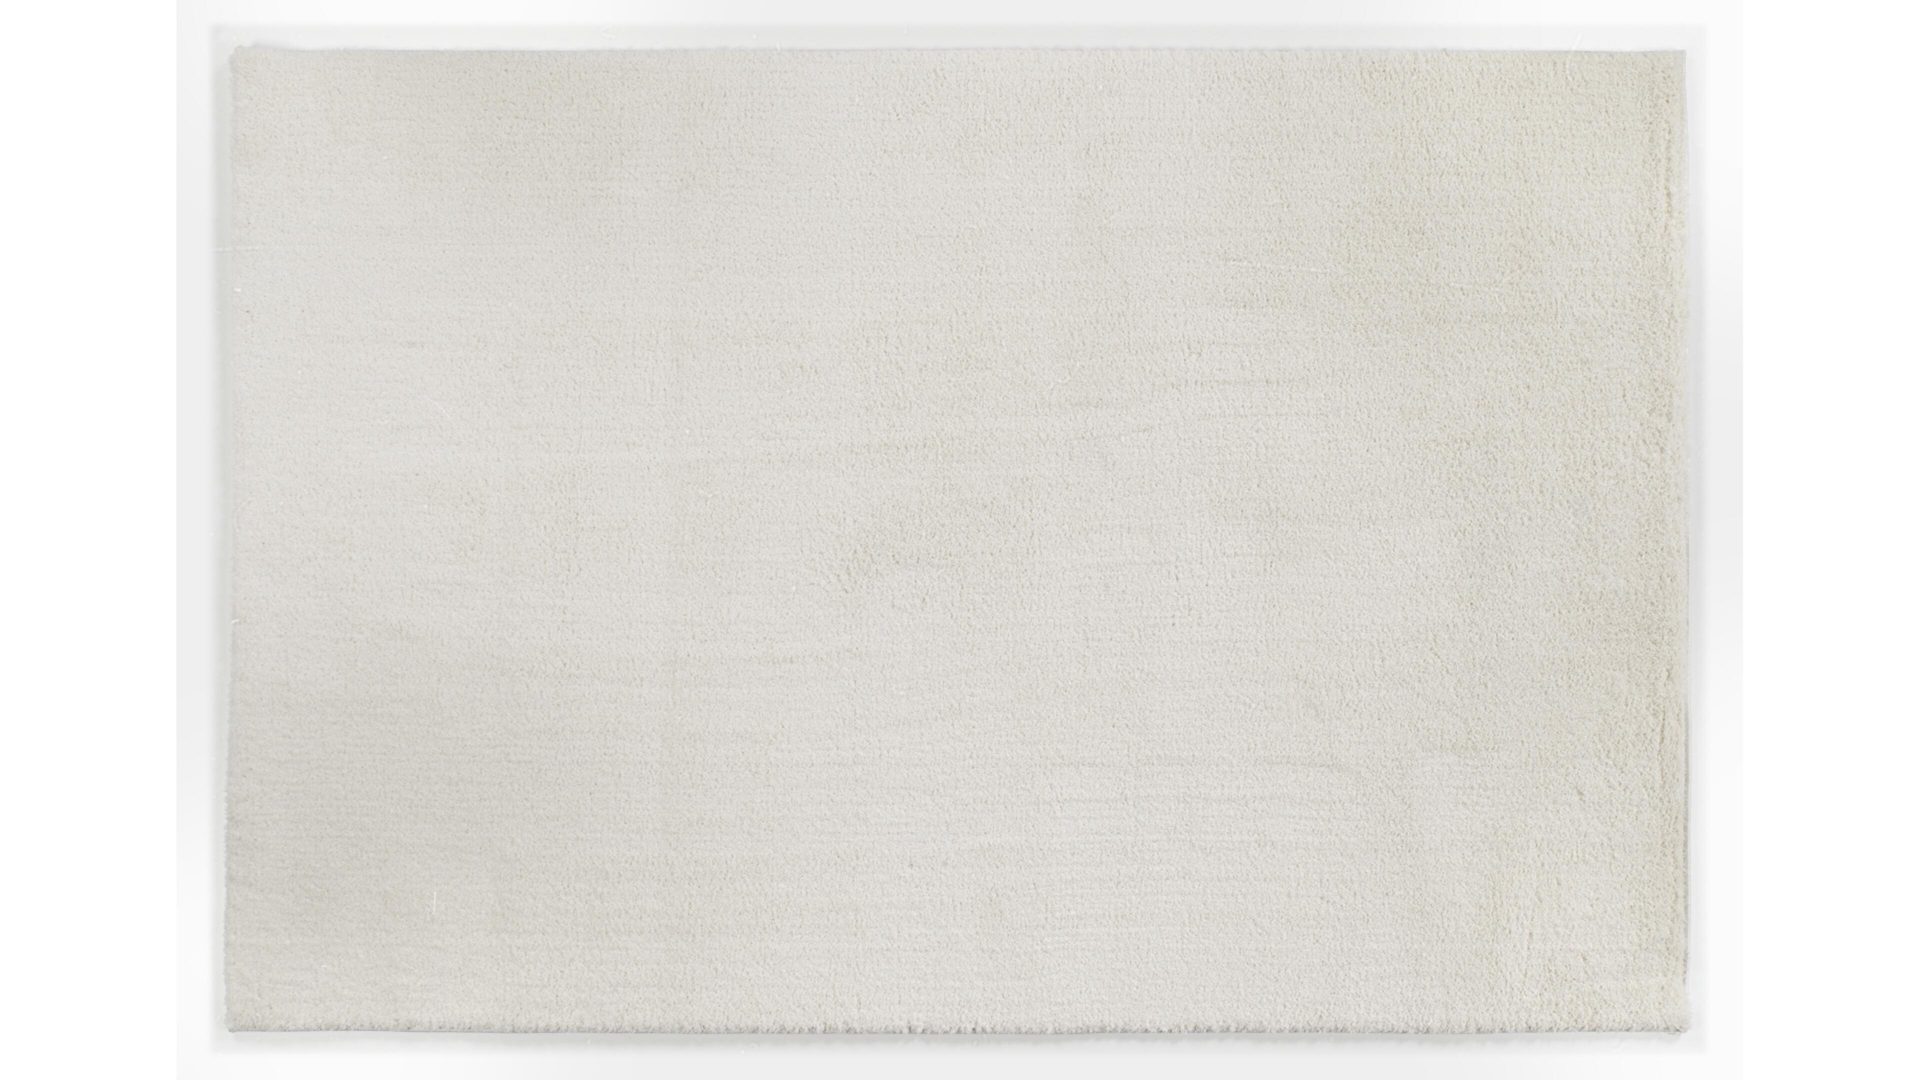 Hochflorteppich Oci aus Kunstfaser in Weiß Hochflorteppich Soft Dream für Ihre Wohnaccessoires cremefarbene Kunstfaser – ca. 140 x 200 cm